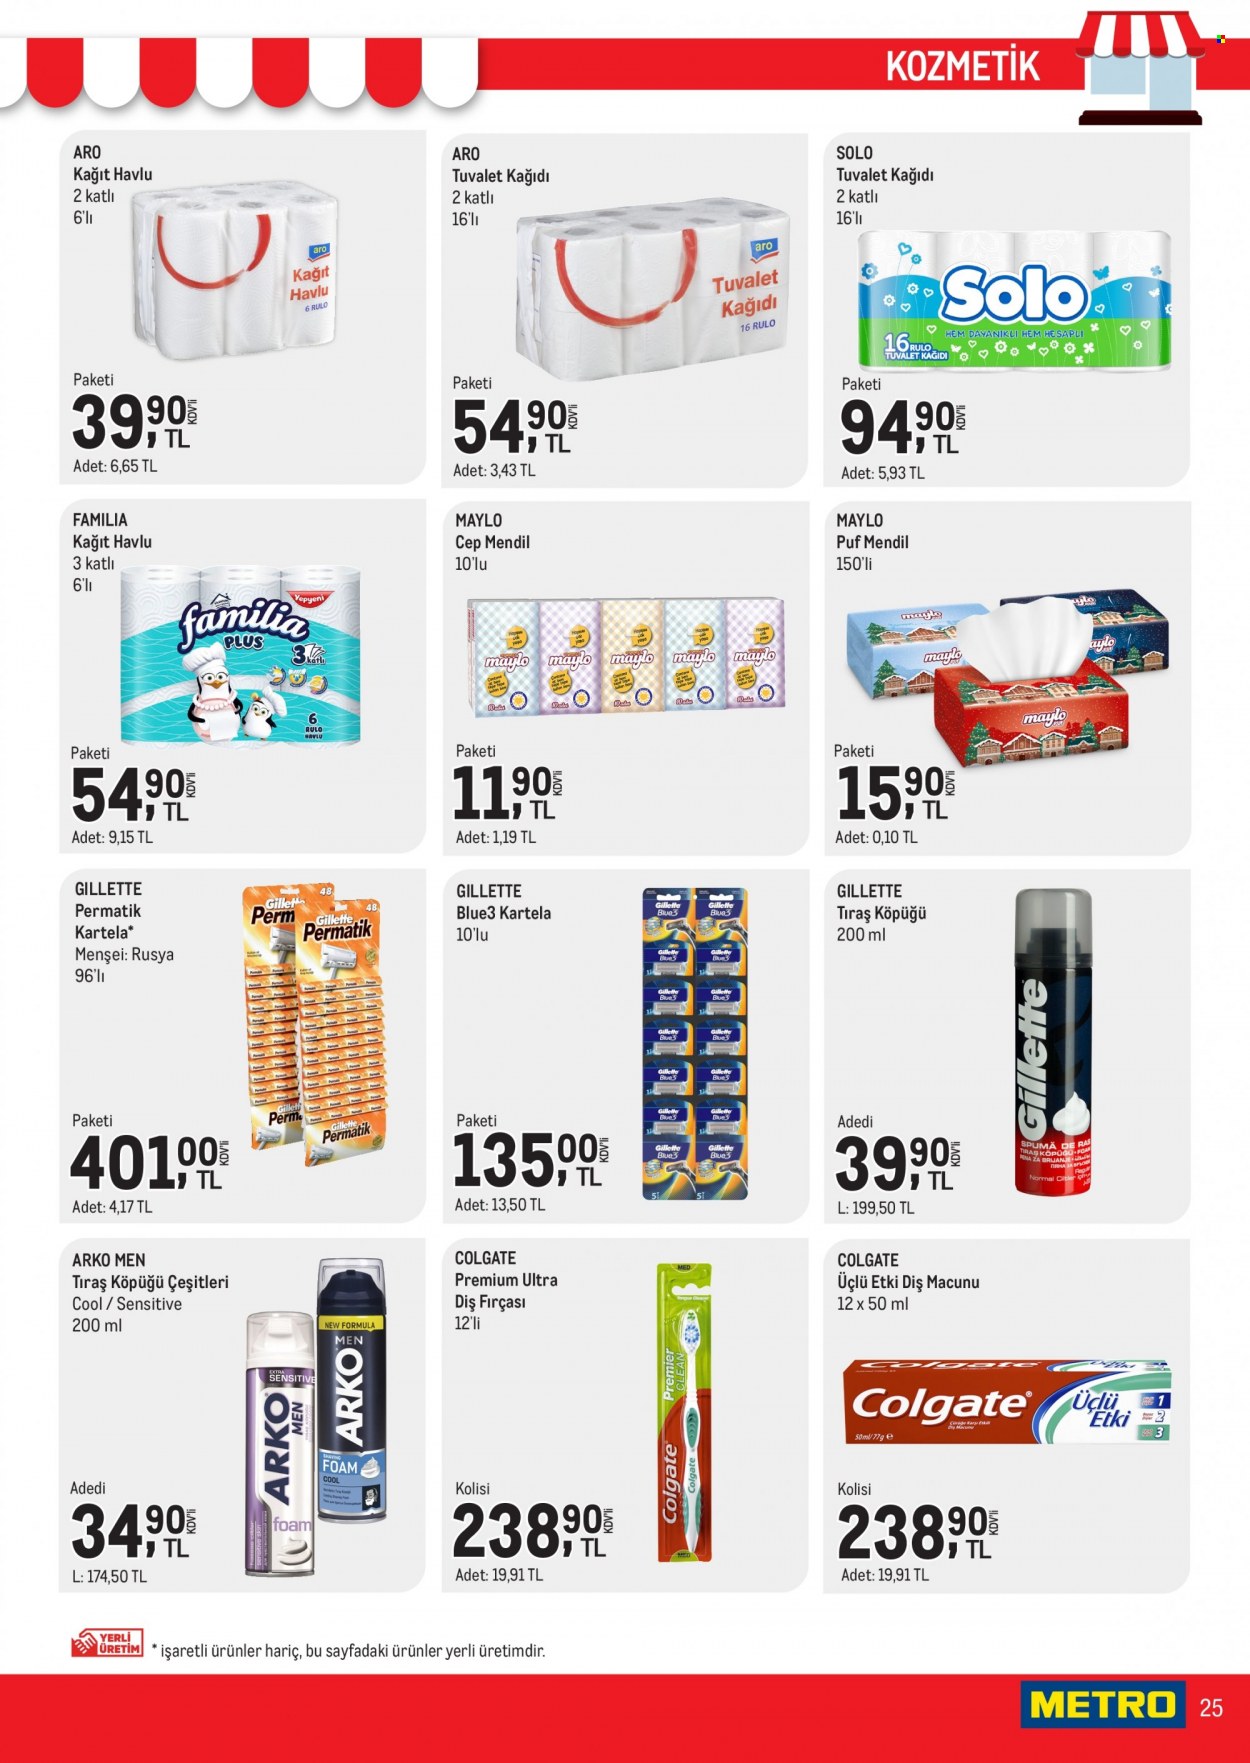 thumbnail - Metro aktüel ürünler, broşür  - 2.1.2023 - 2.14.2023 - Satıştaki ürünler - tıraş köpüğü, Colgate, diş fırçası, diş macunu, Gillette, fırça. Sayfa 25.